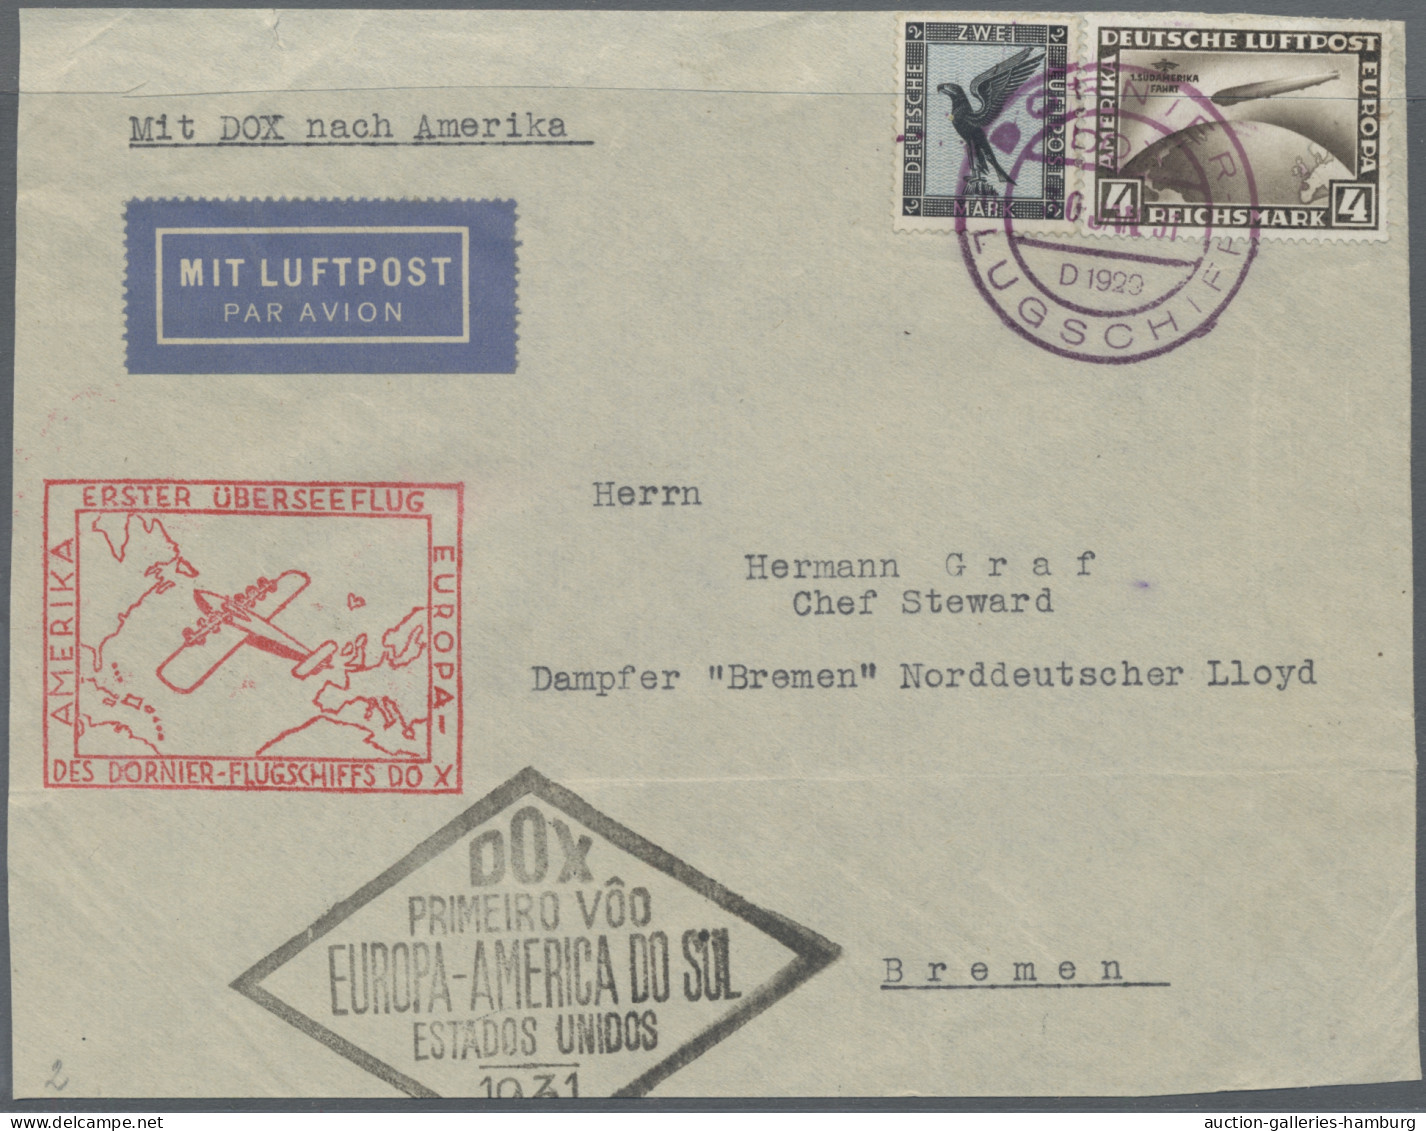 Deutsches Reich: 1923-1945, sauber gestempelte Sammlung in SAFE-Vordruckbinder m